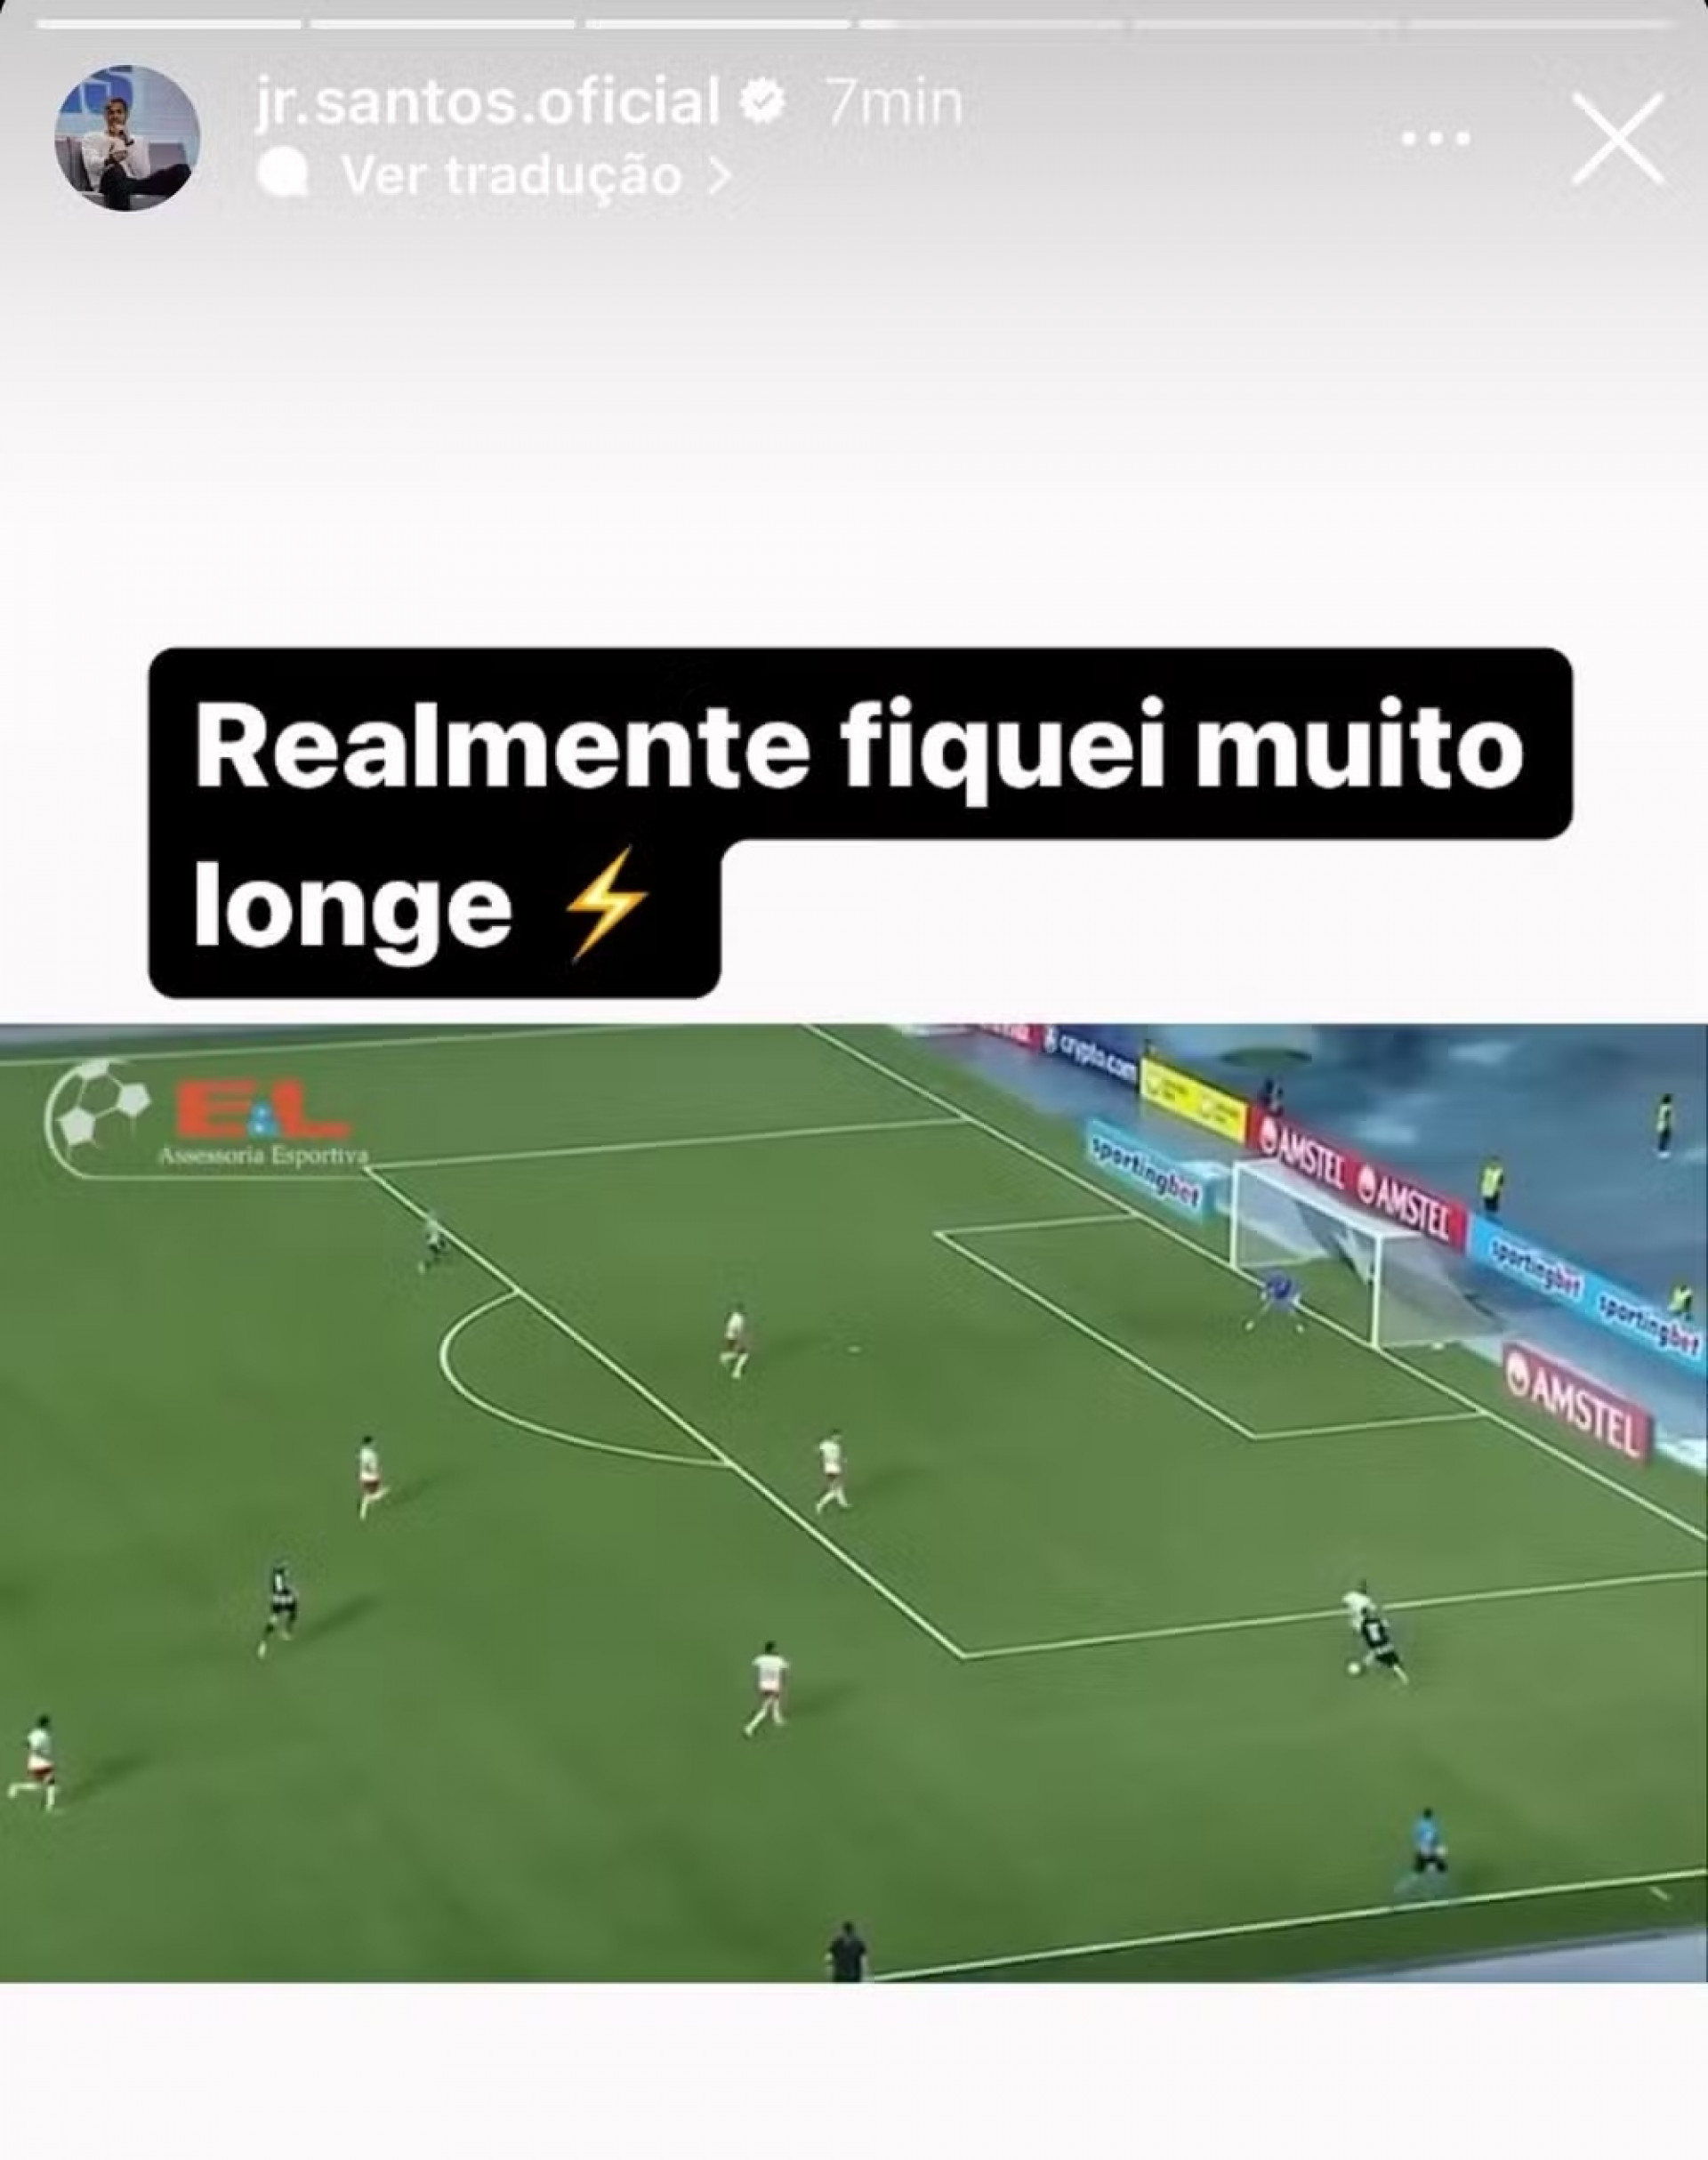 Post de Júnior Santos nas redes sociais - Reprodução / Instagram